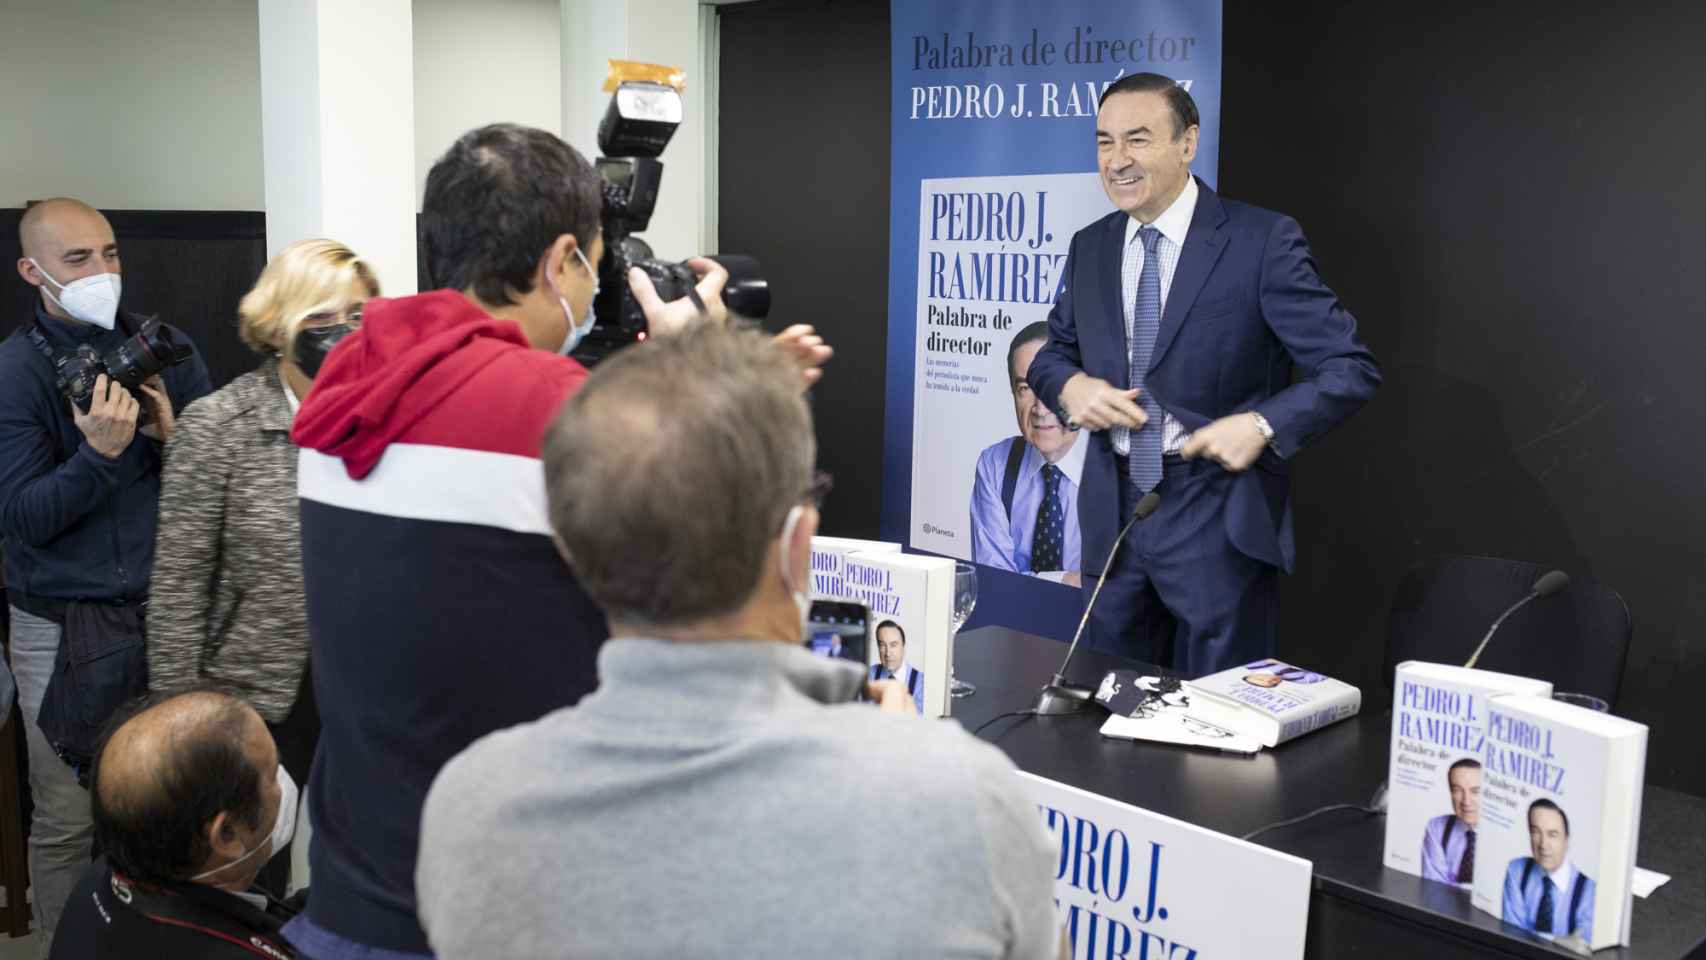 Pedro J. Ramírez, presidente ejecutivo de EL ESPAÑOL, posa ante los fotógrafos en la presentación de su libro 'Palabra de director'.